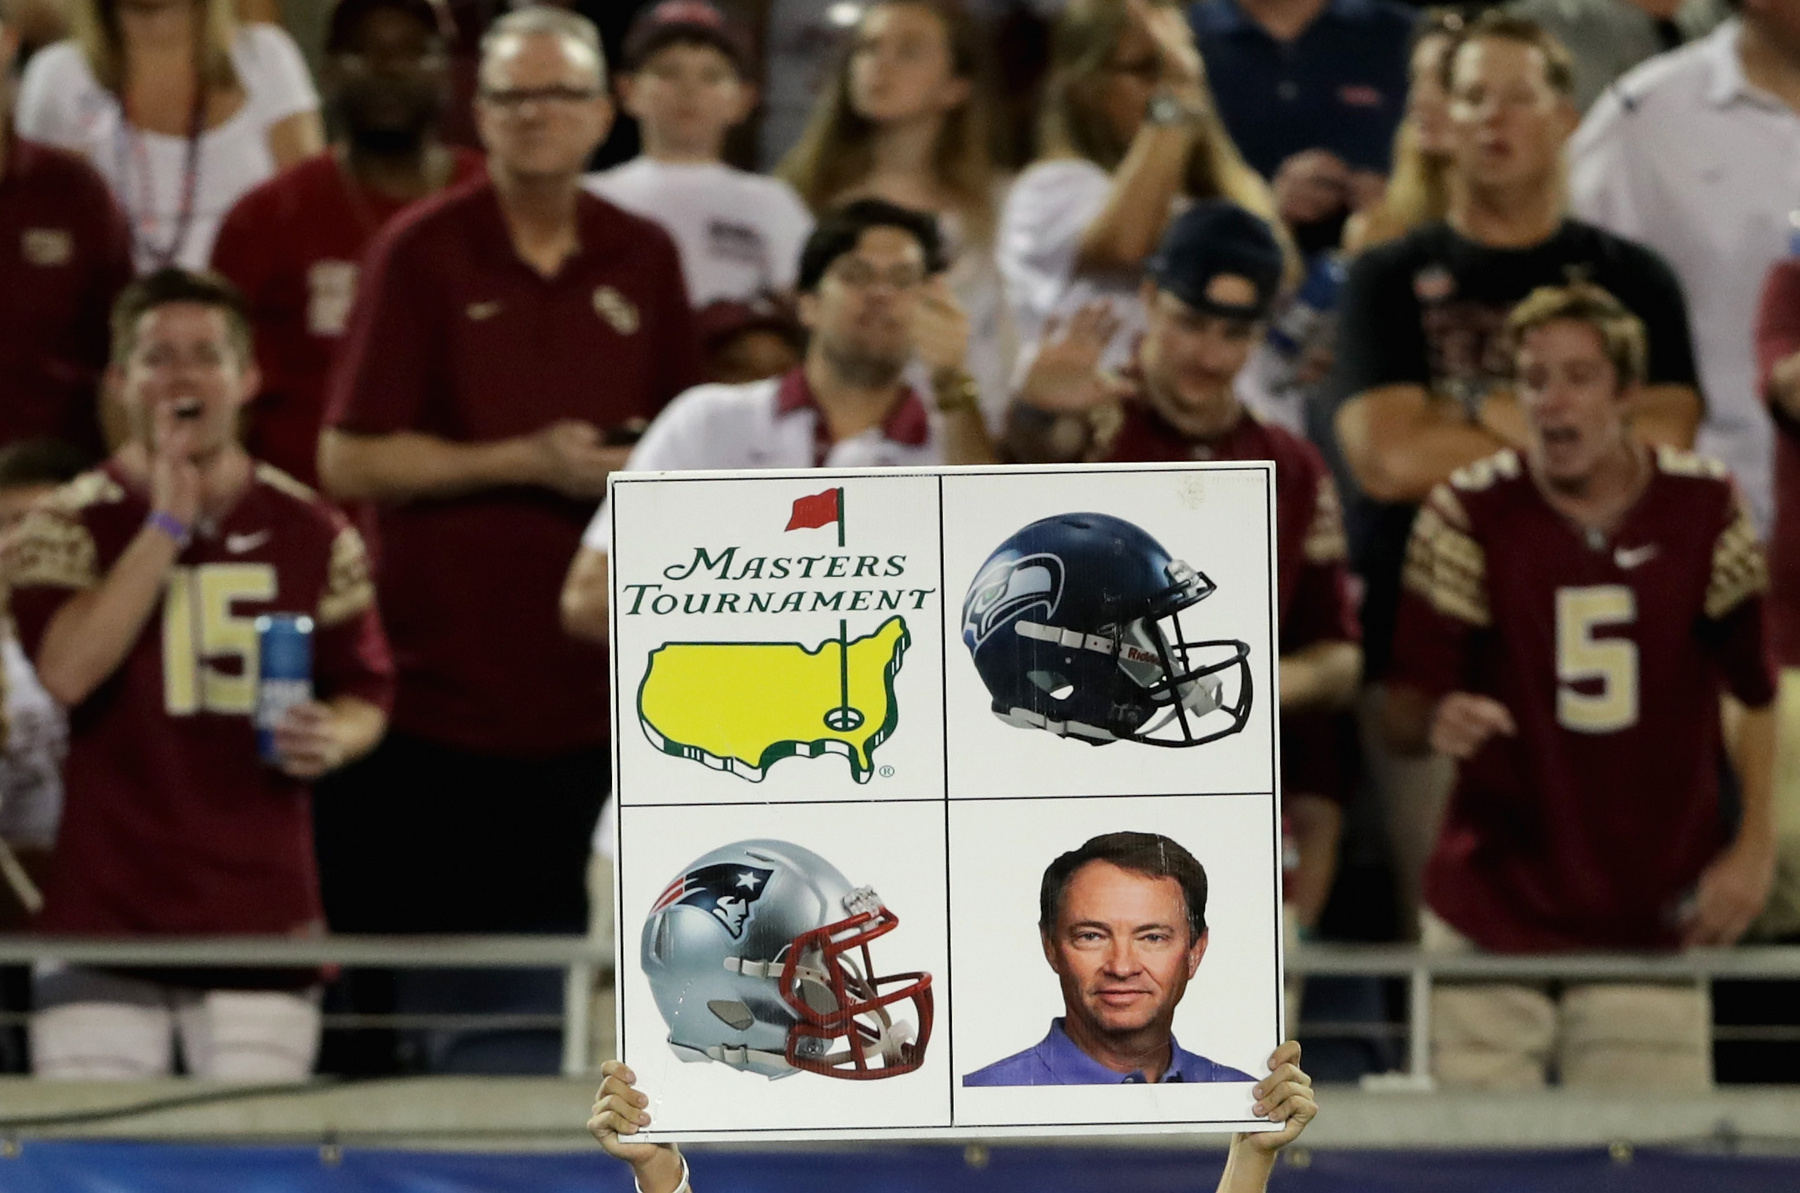 A Florida State Seminoles csapat saját logóját mutatja táblán a játékosok felé – ez valószínűleg egy fixen rögzített játékvariáció kódját jelentheti